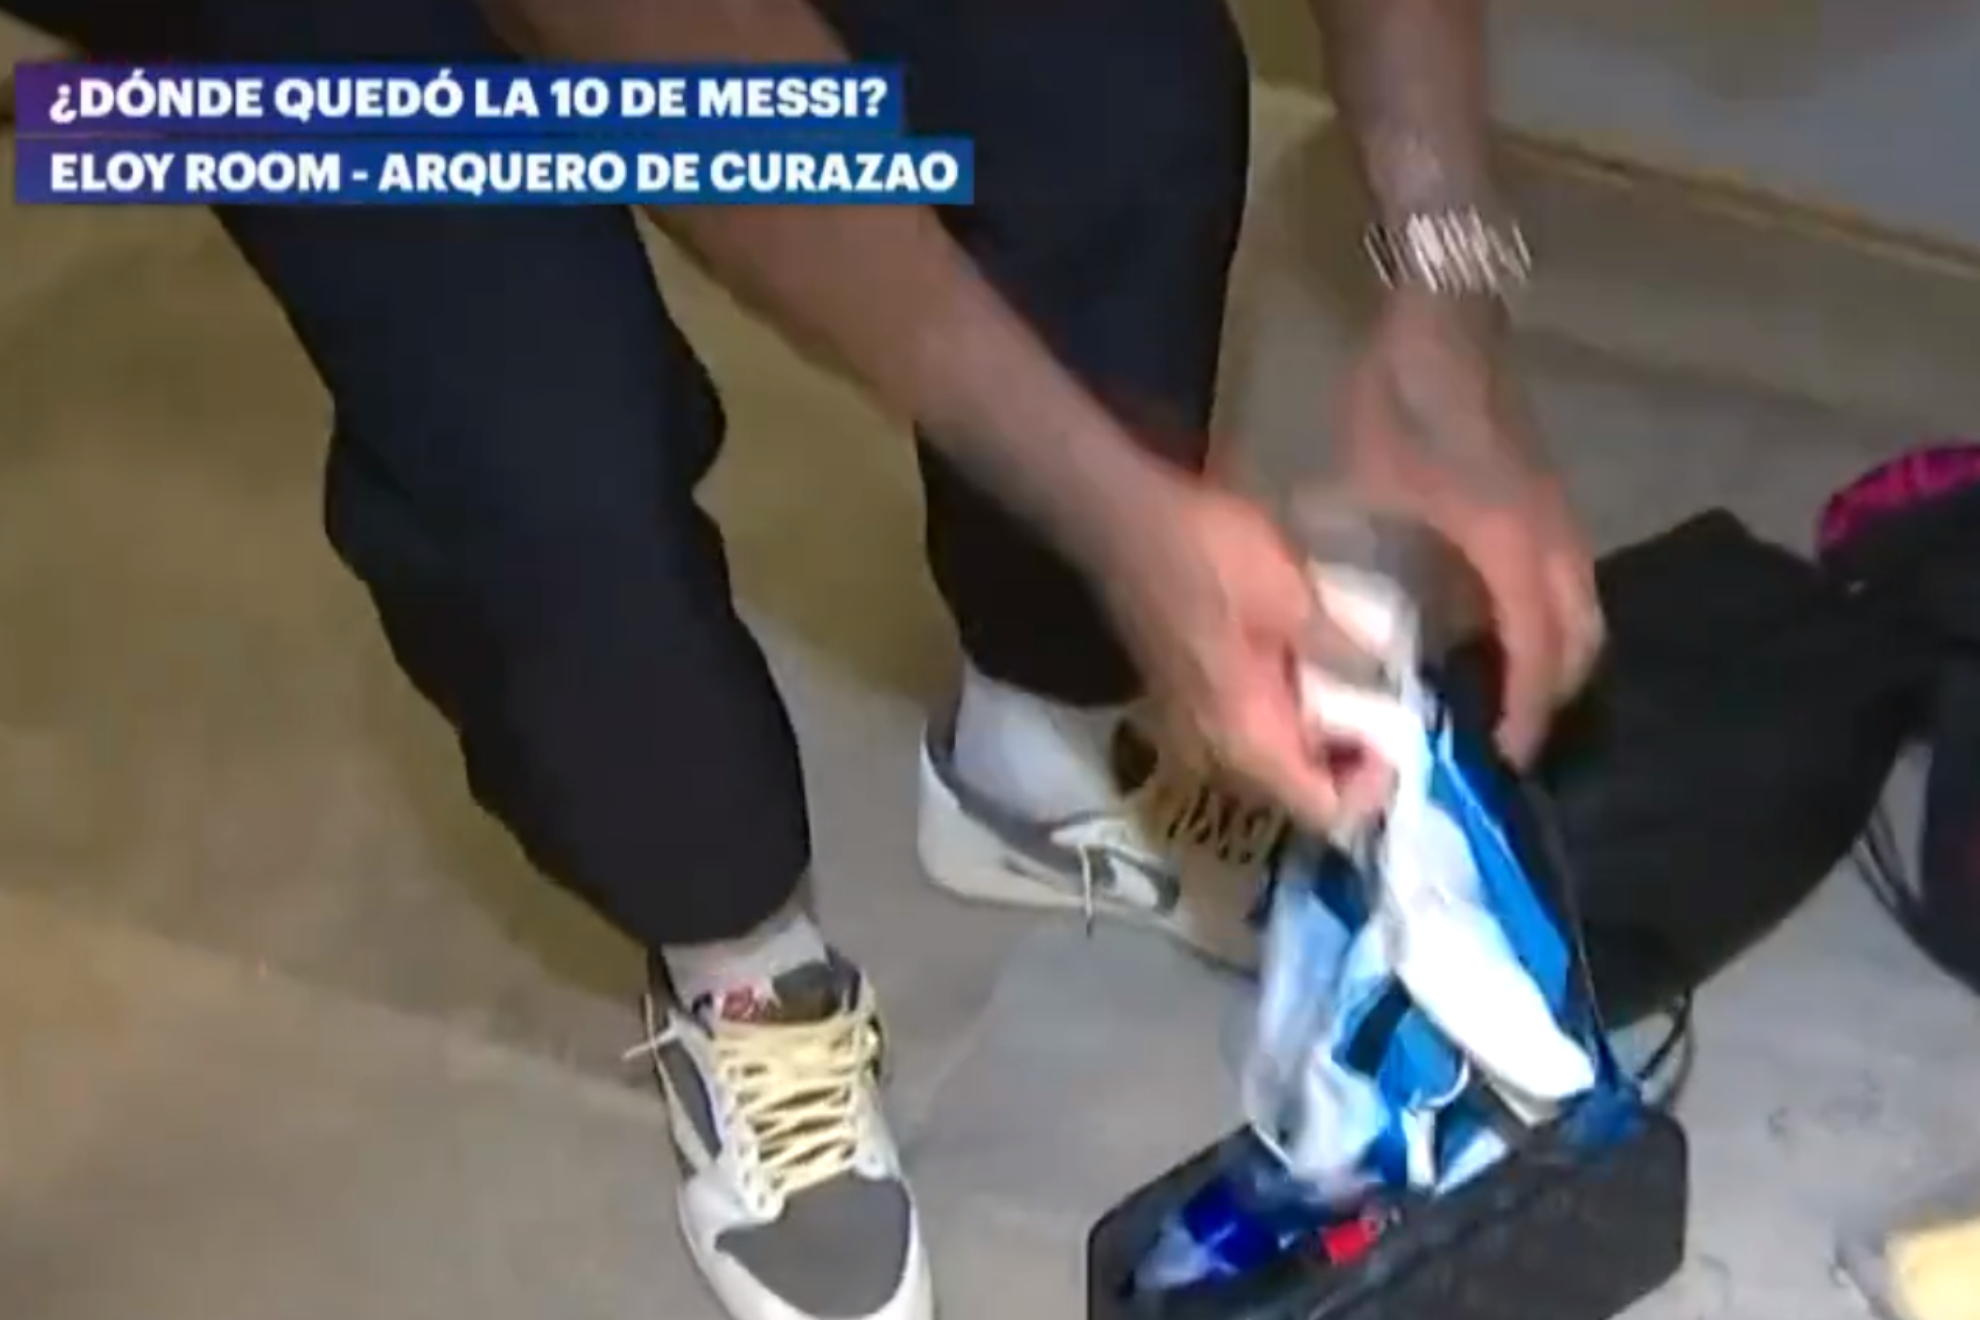 El relato del portero del Curazao por quedarse con la camiseta de Messi: "Ni para dormir"